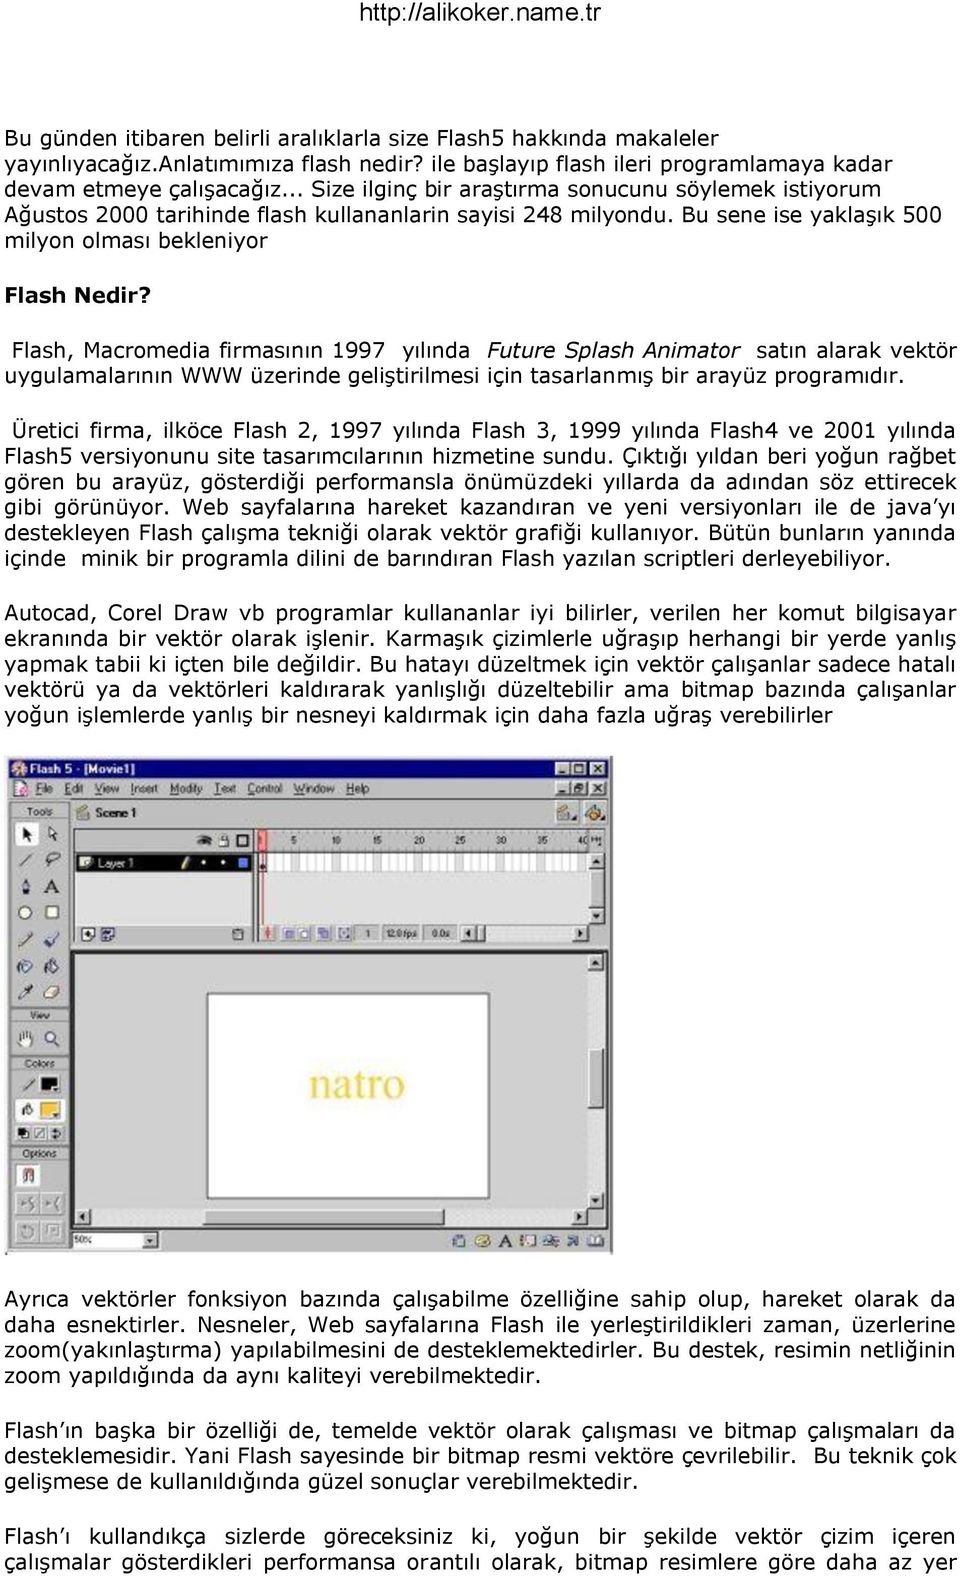 Flash, Macromedia firmasının 1997 yılında Future Splash Animator satın alarak vektör uygulamalarının WWW üzerinde geliştirilmesi için tasarlanmış bir arayüz programıdır.